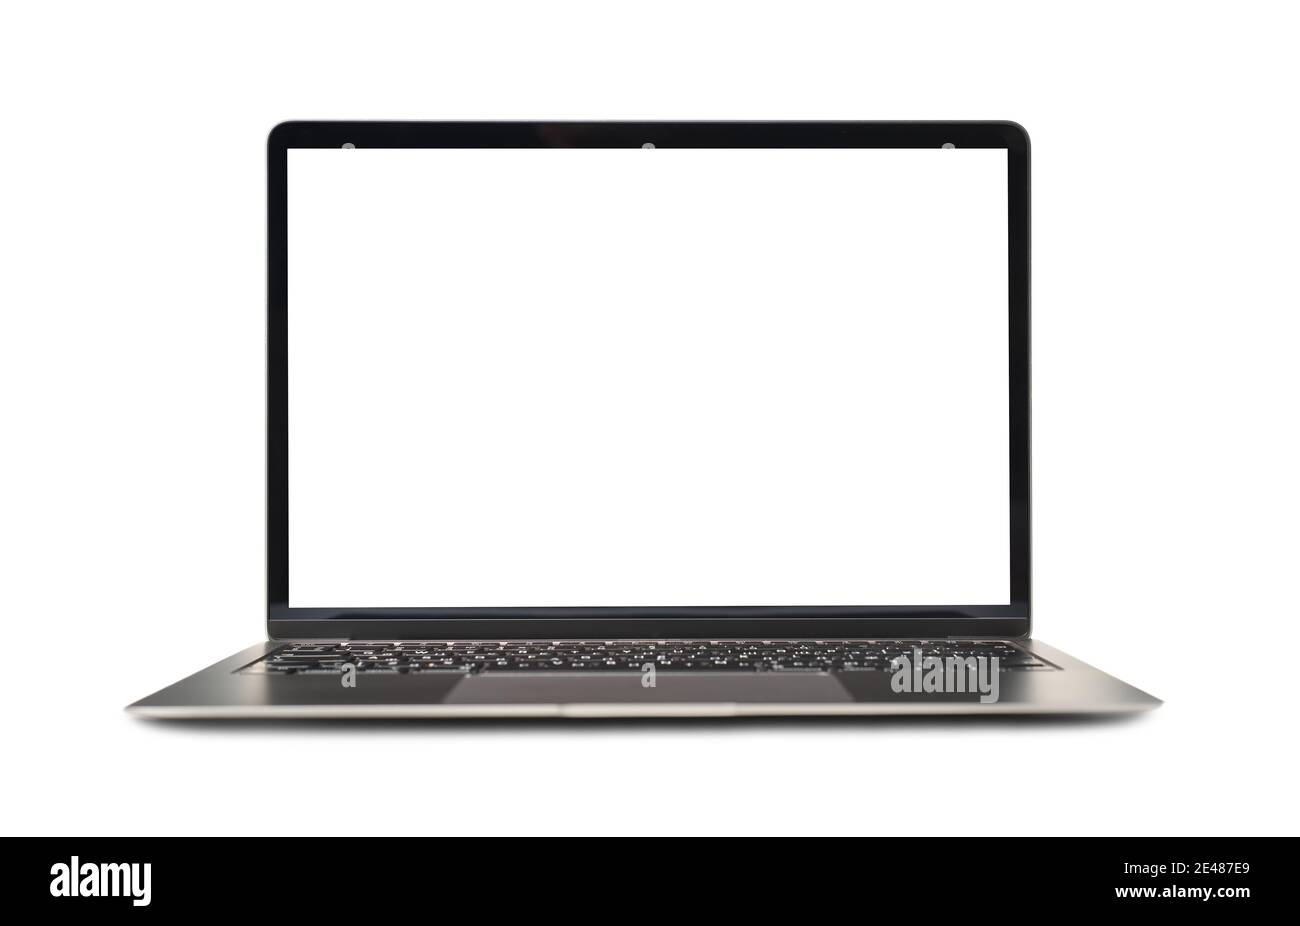 Maquette d'un ordinateur portable moderne avec écran blanc vide allumé photo d'arrière-plan blanche Banque D'Images